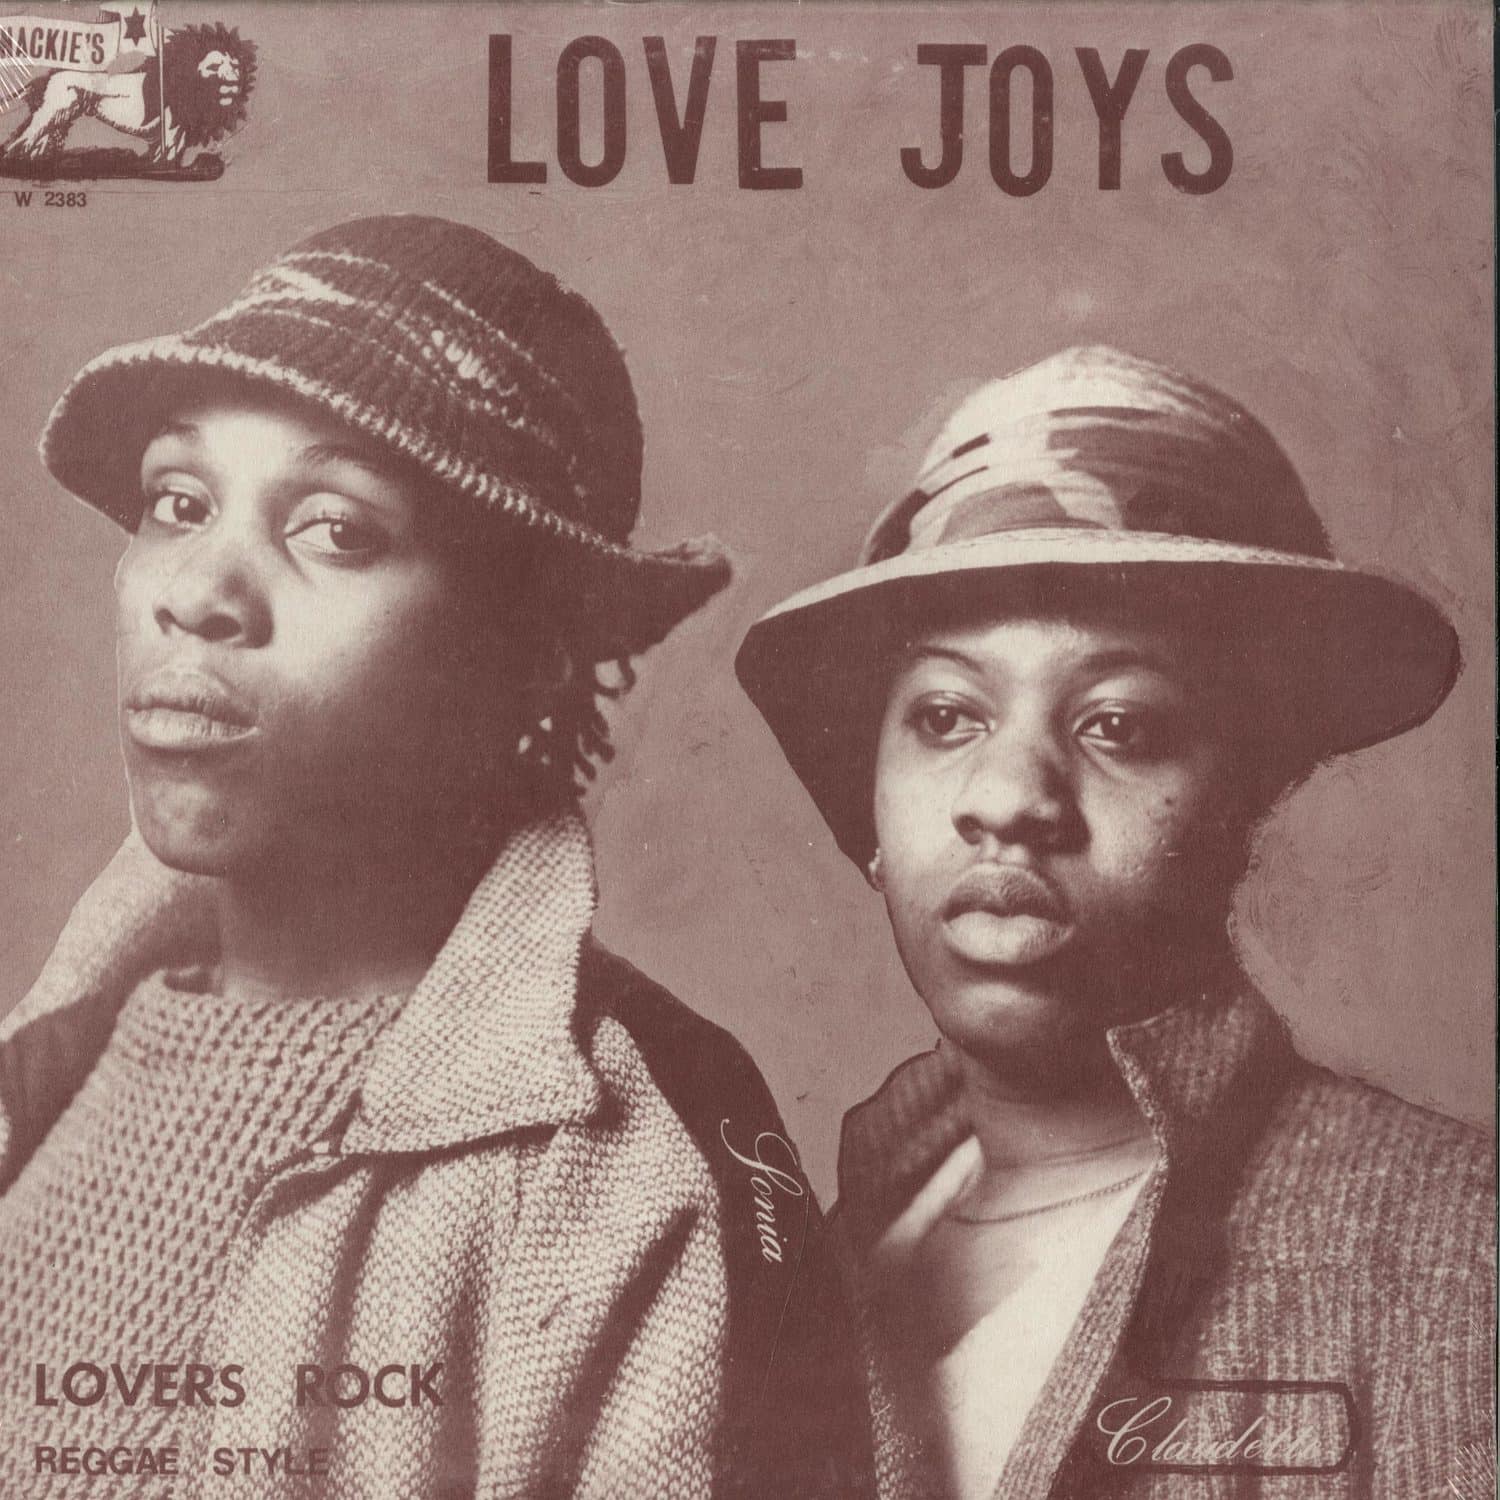 Love Joys - LOVERS ROCK REGGAE STYLE 